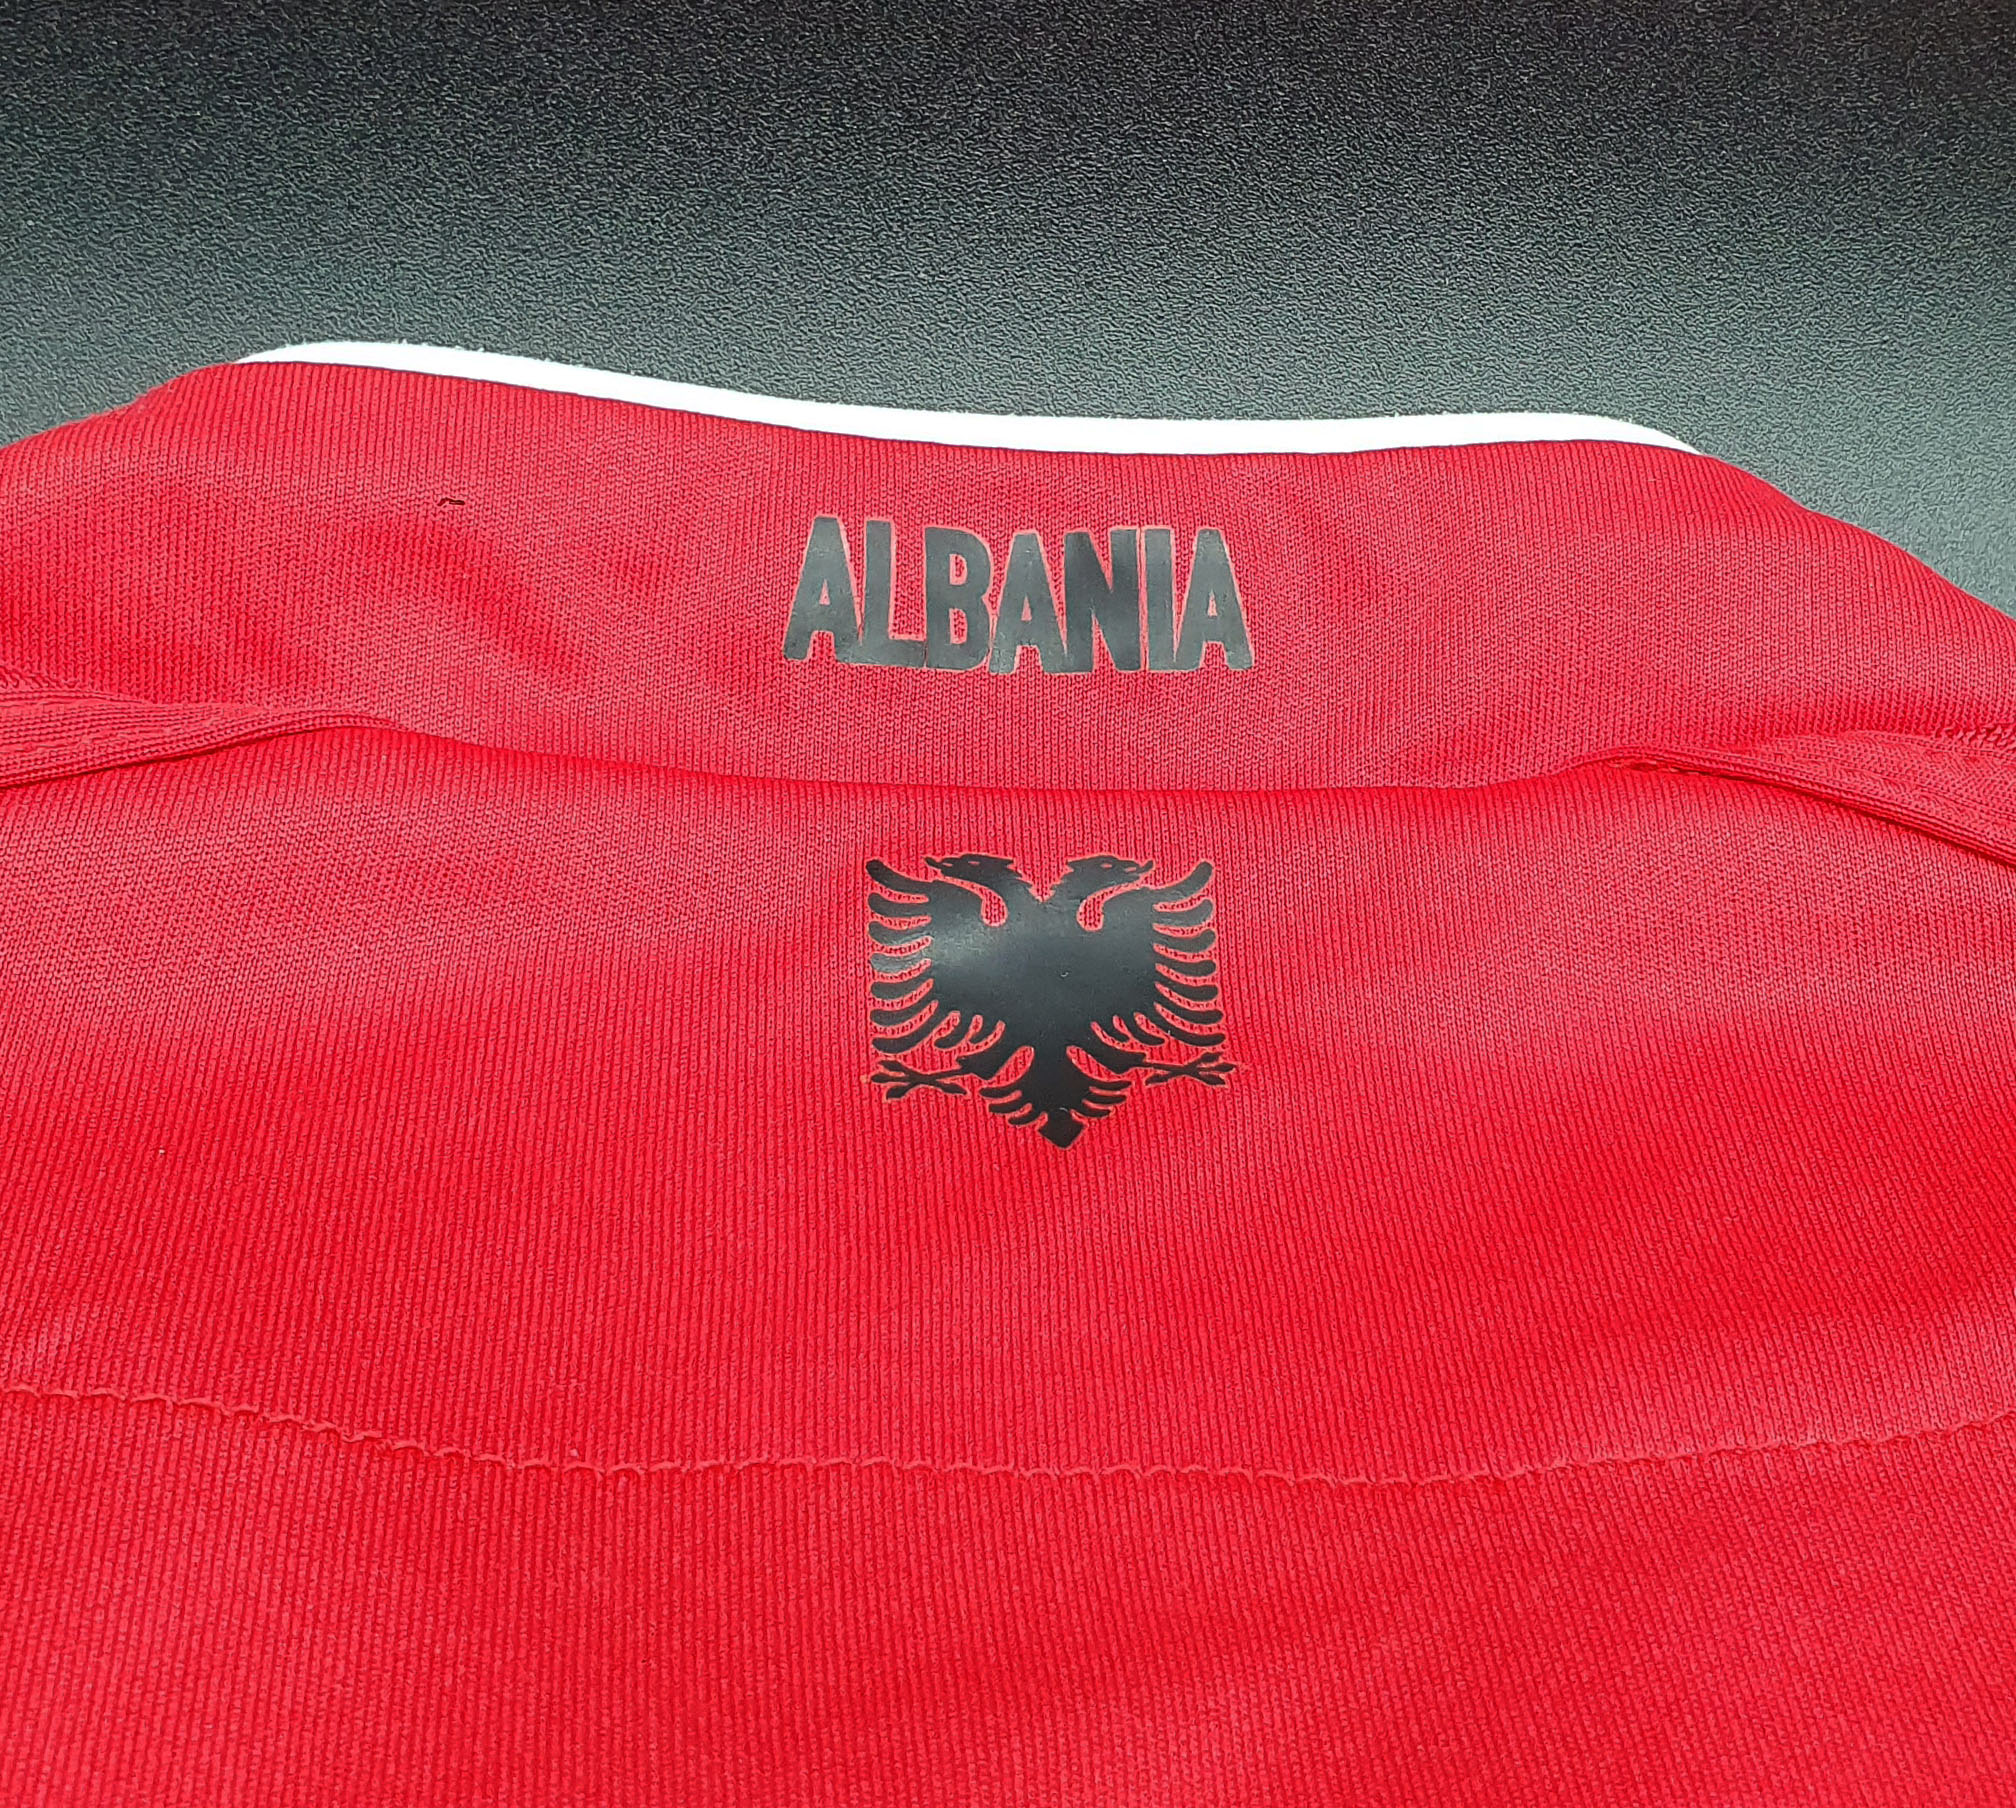 Albania 2016 maglia Macron home » BOLA Football Store